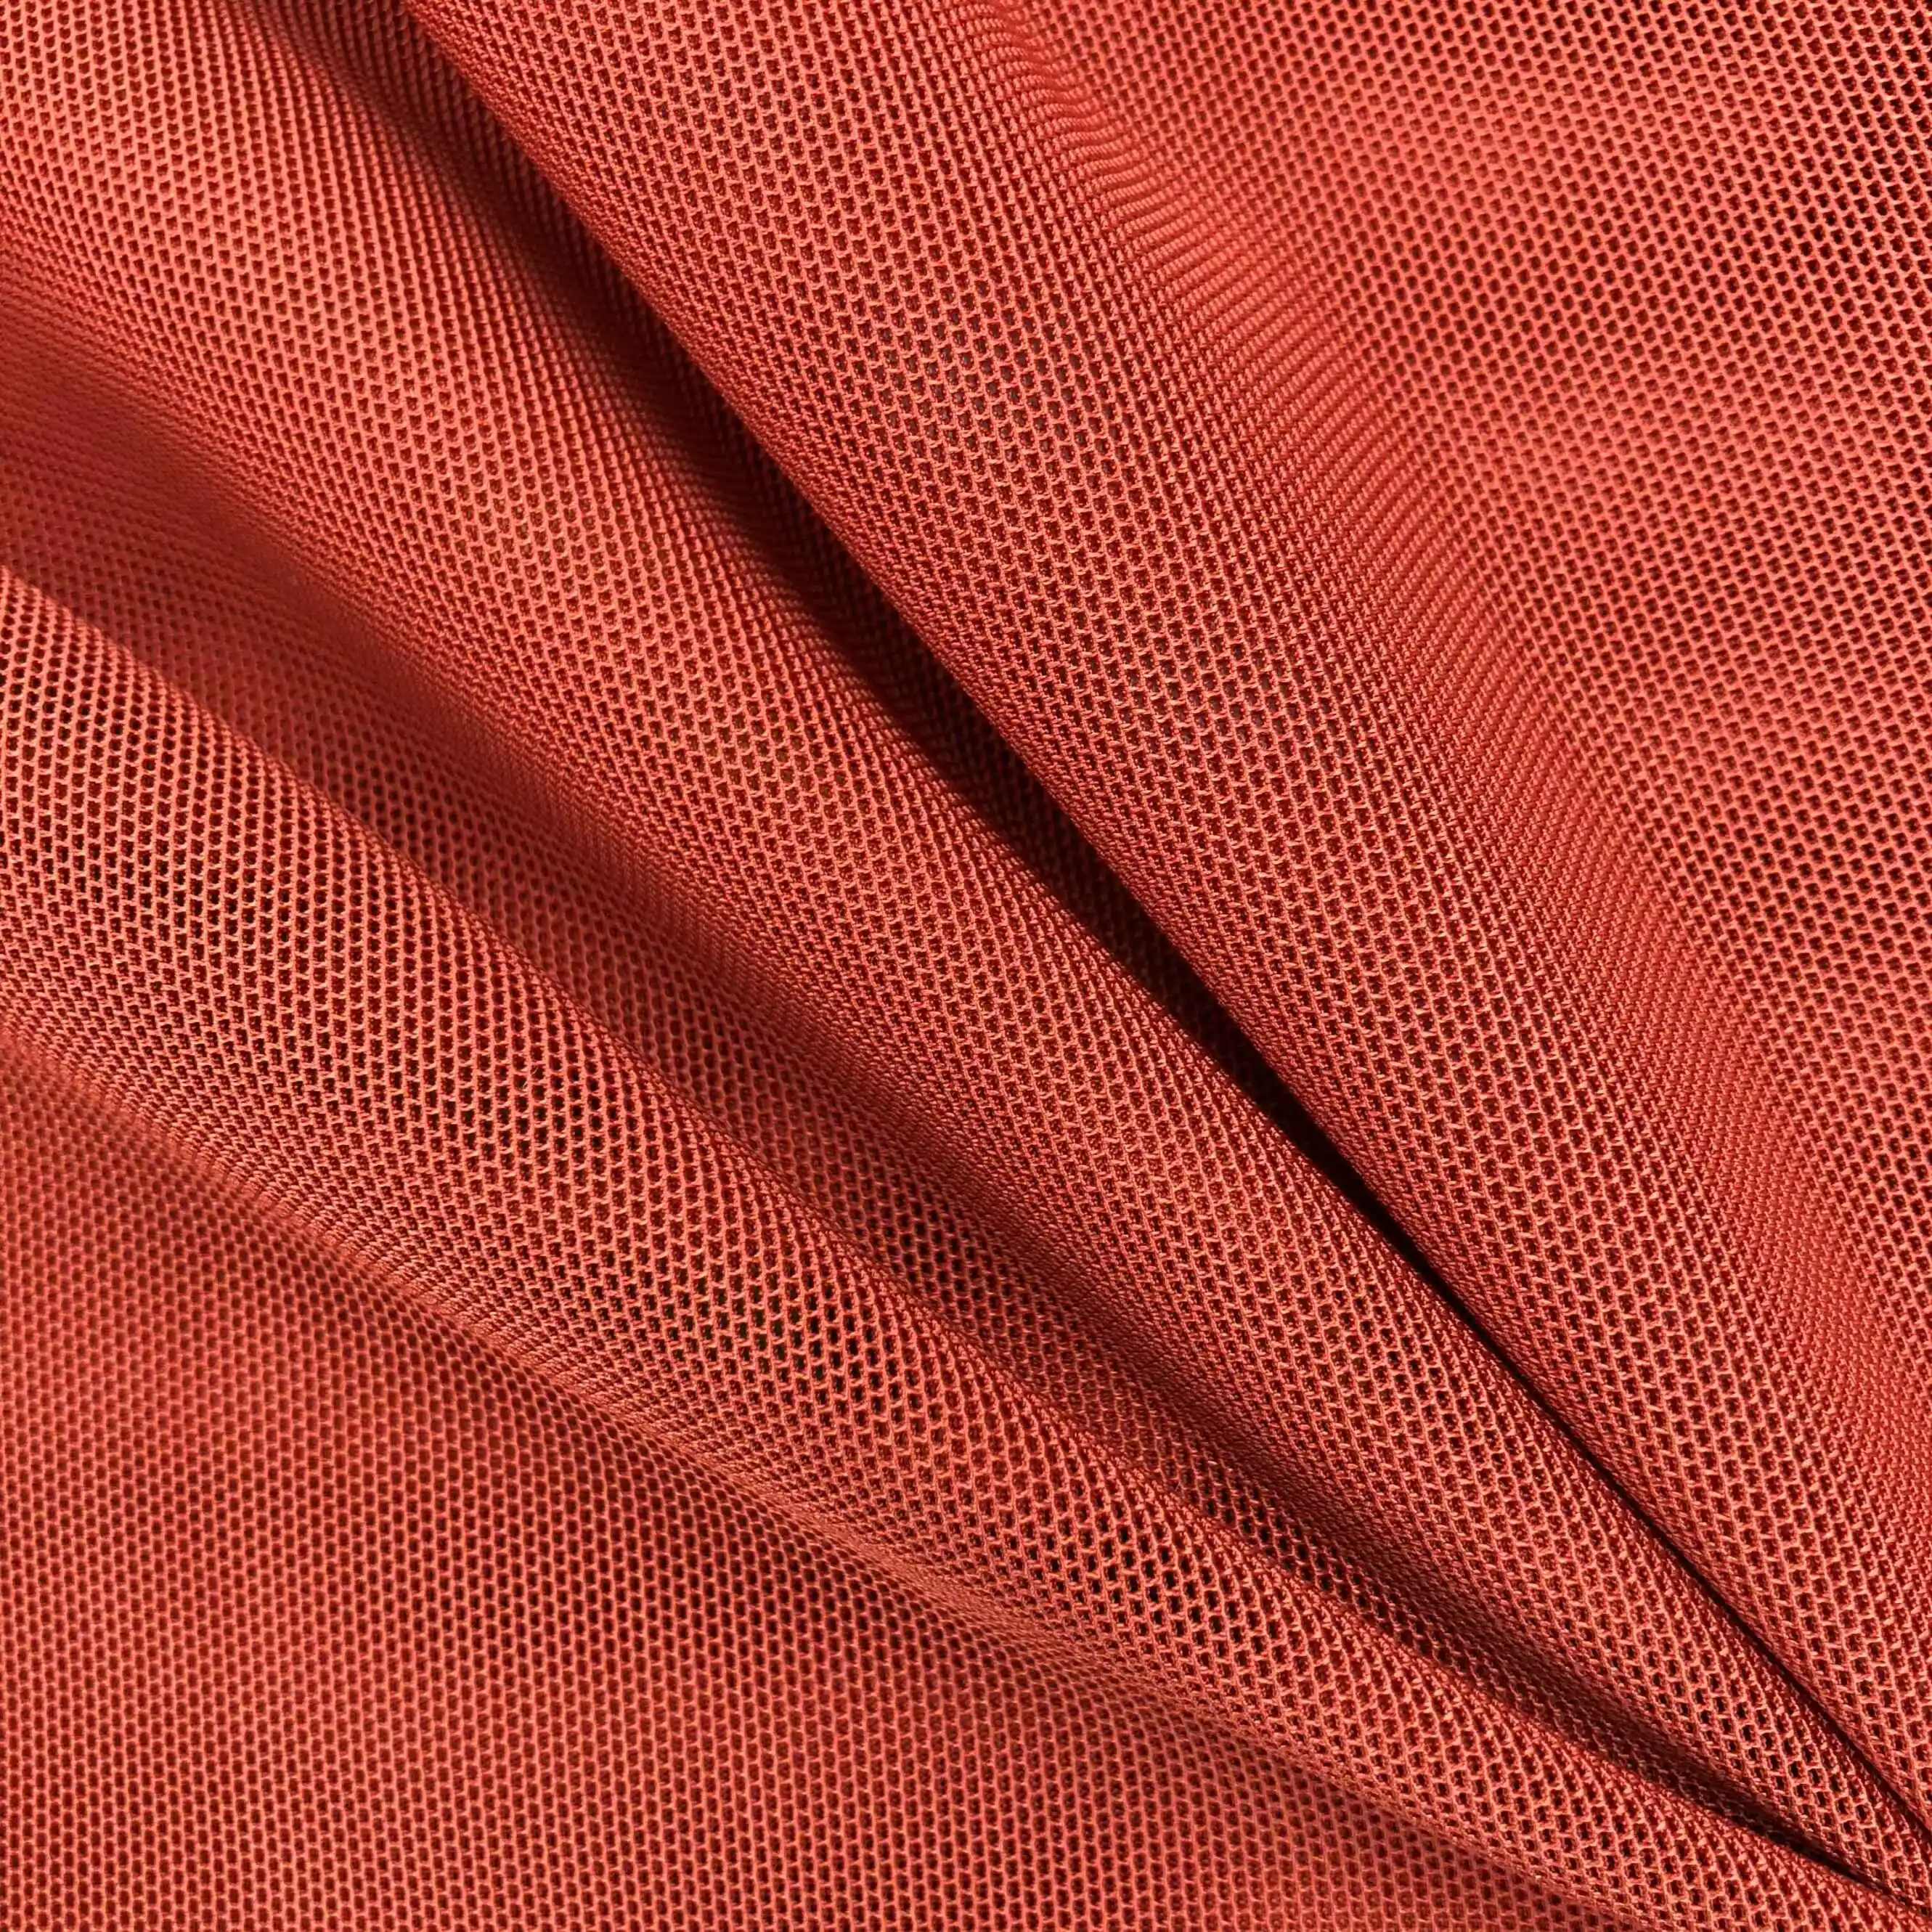 No6618 tecido de tule roxo e macio, design elegante, qualidade superior, malha hexagonal, tecido para vestido de noiva